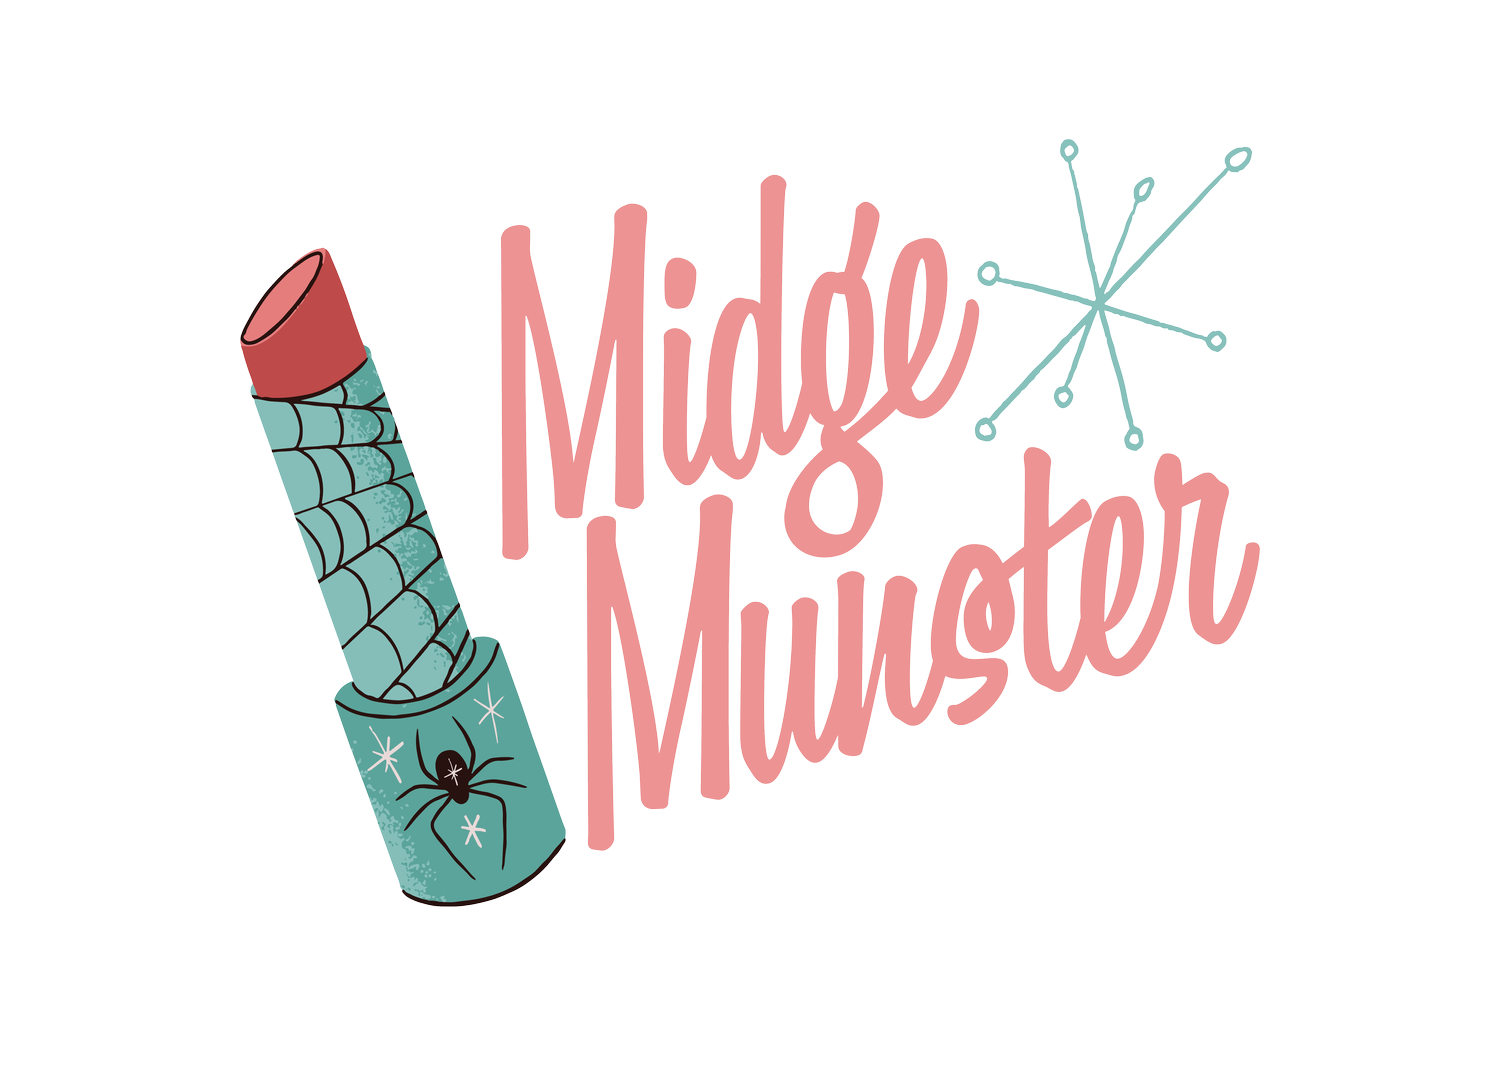 Midge Munster